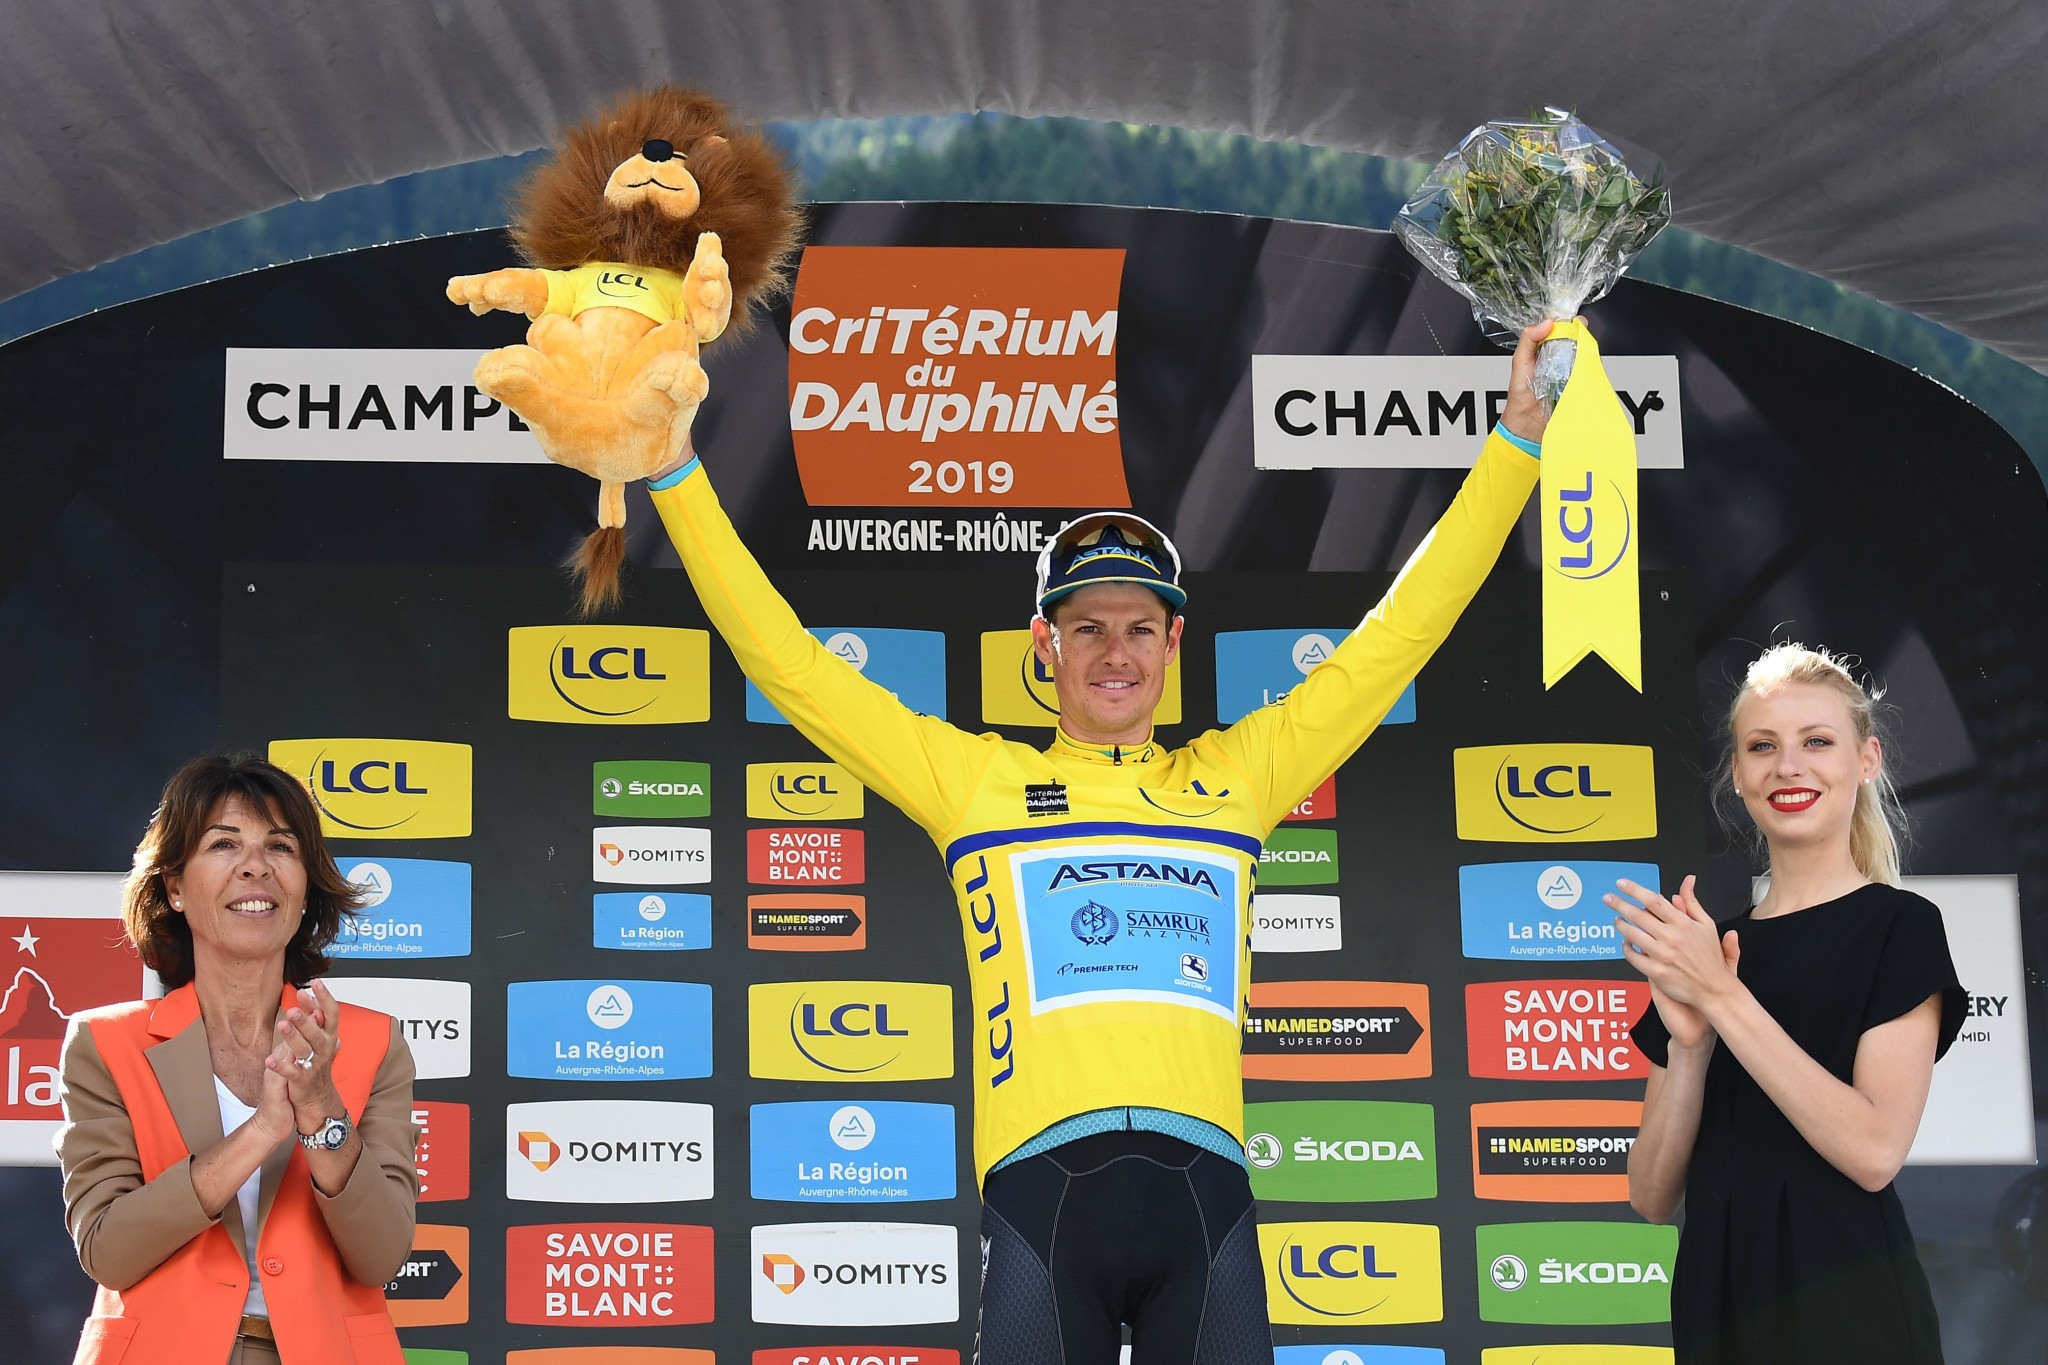 Astana Pro's Jakob Fuglsang of Denmark has won his second Critérium du Dauphiné title ©Getty Images